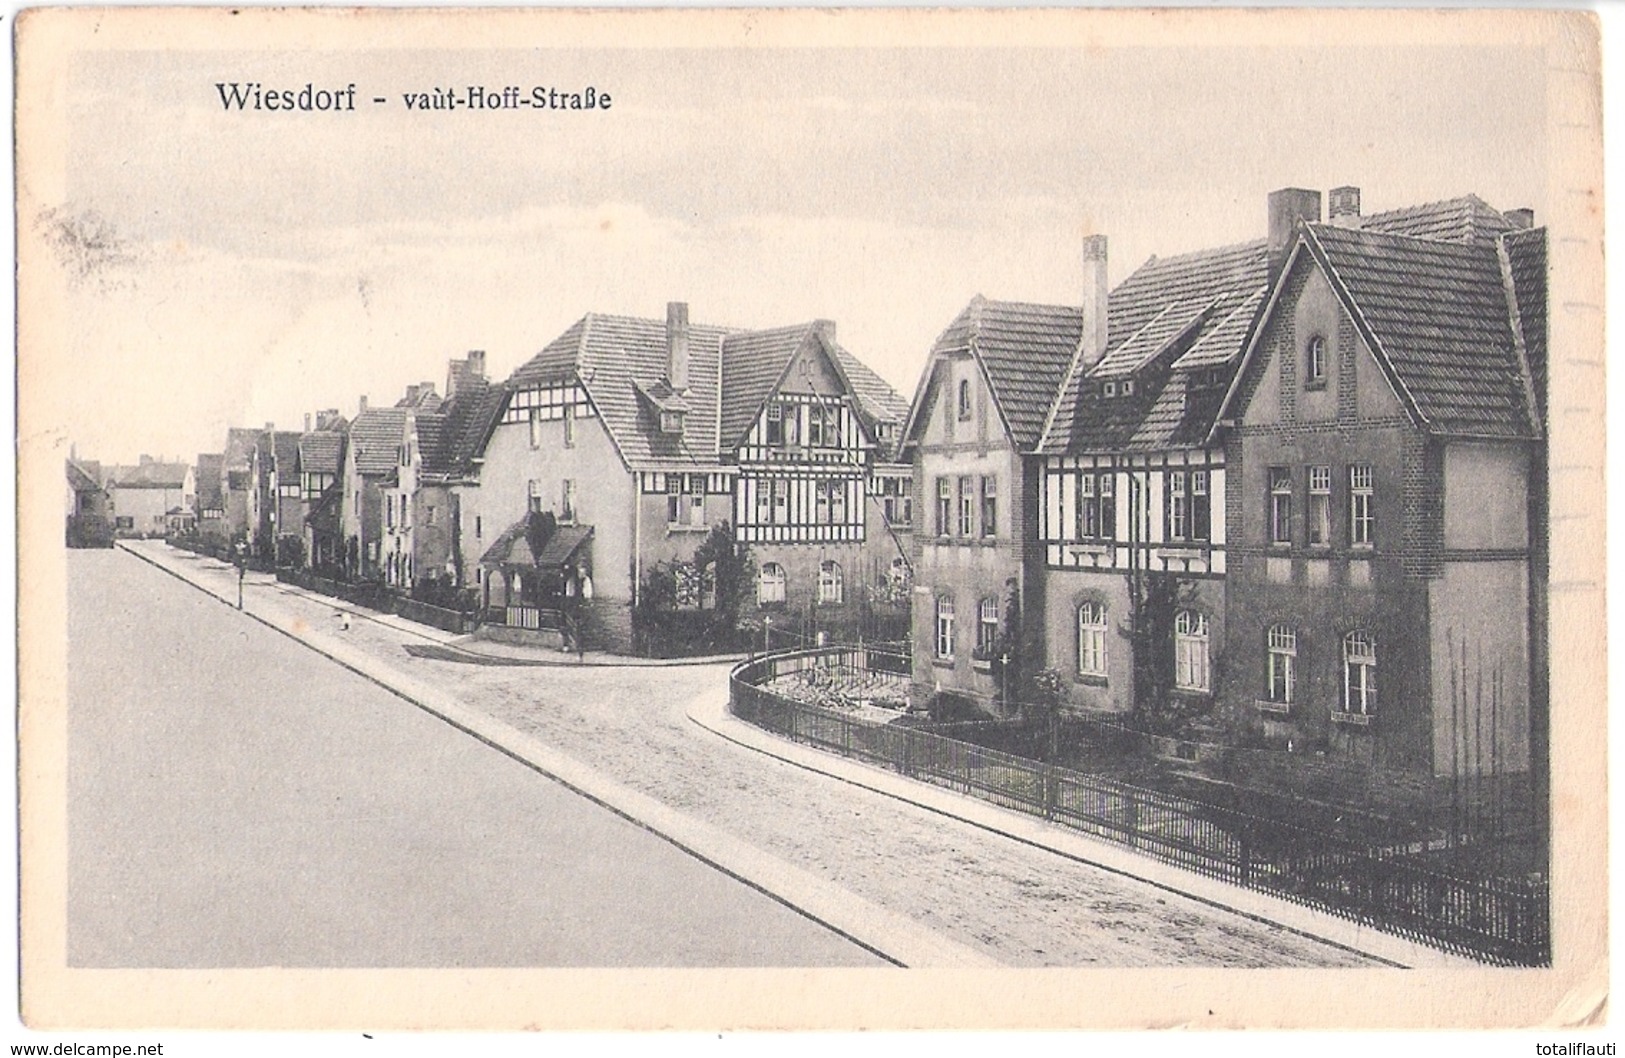 WIESDORF Leverkusen Van't Hoff Straße Einzel Villen 10.9.1921 Gelaufen - Leverkusen